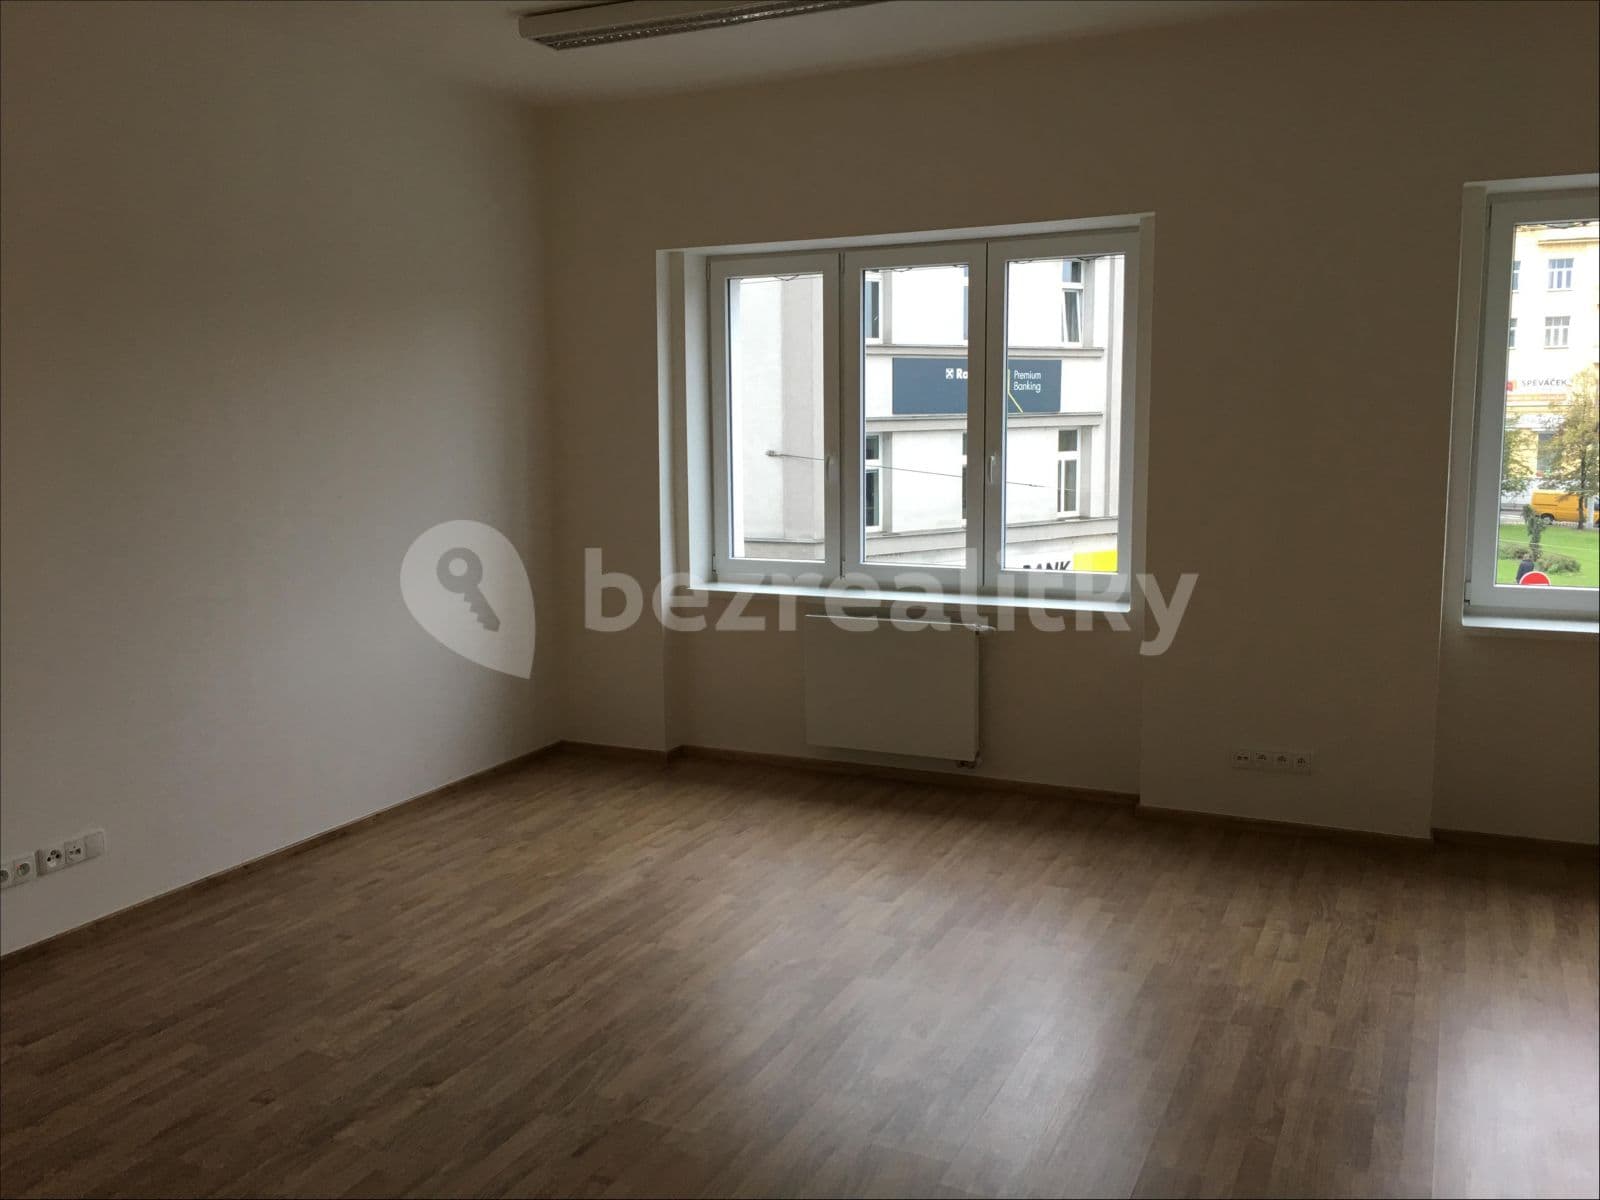 office to rent, 46 m², Jandova, Prague, Prague